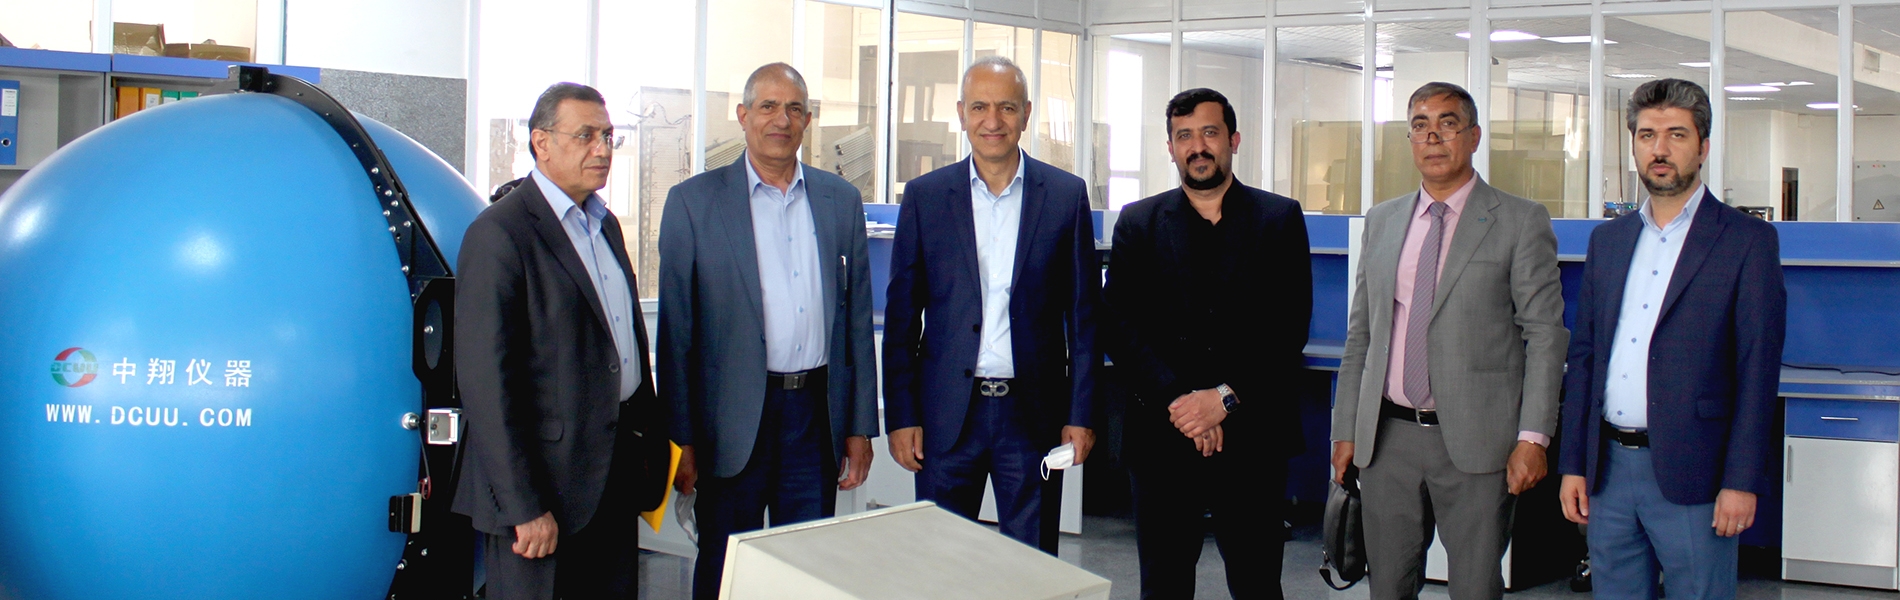 بازدید چند تن از اعضای هیئت مدیره انجمن از کارخانه شرکت فن آوران صنعت برق توس (ترونیکس) در شهر مشهد